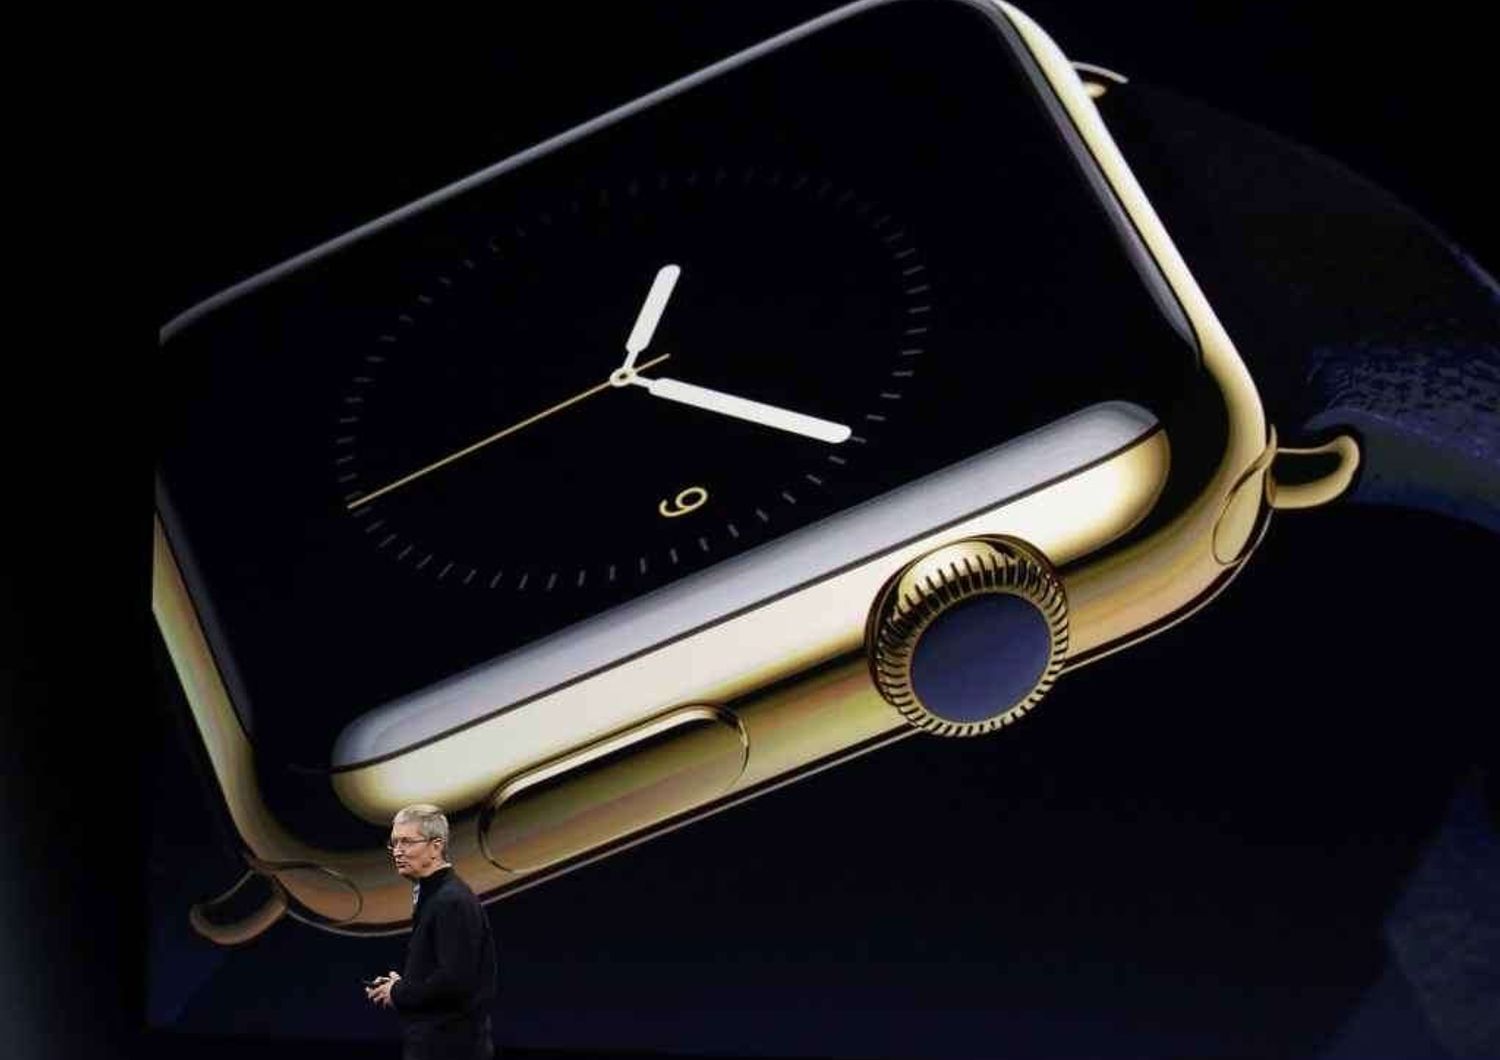 Ecco l'Apple Watch, costa fino a 20mila dollari